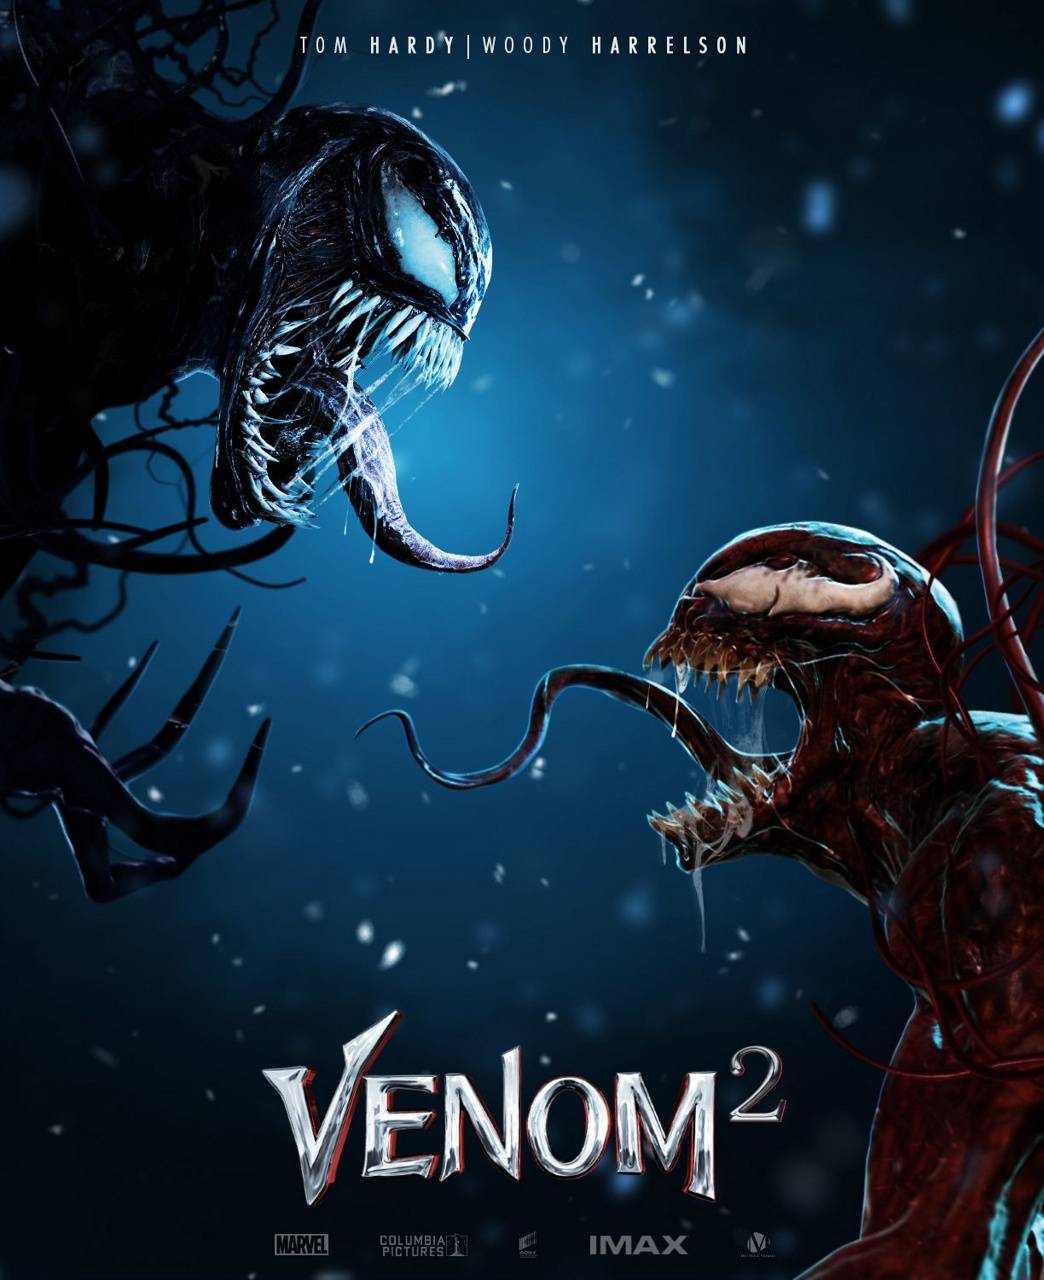 Venom Carnage Venom 2 2021 Wallpaper 4K PC Desktop 341c